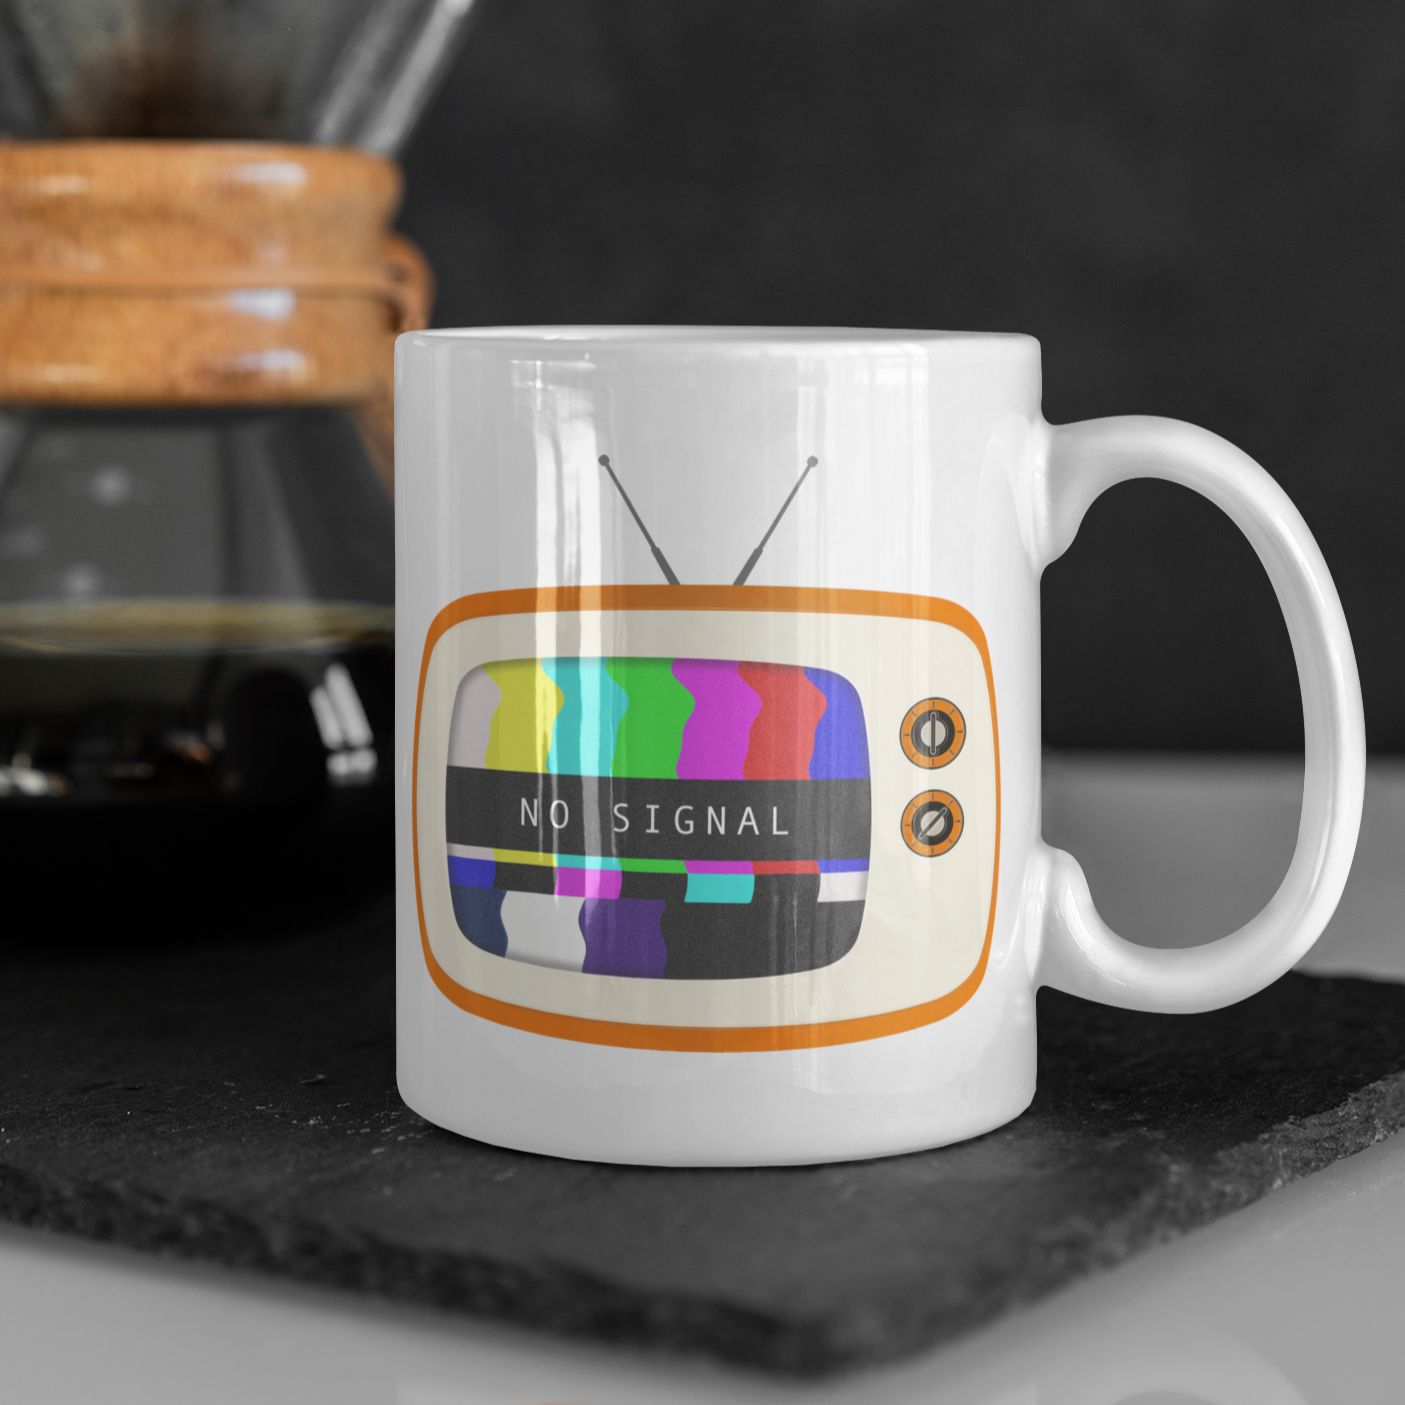 Retro Television, No Signal - 11oz Ceramic Mug 11 oz Mug Retro Tech